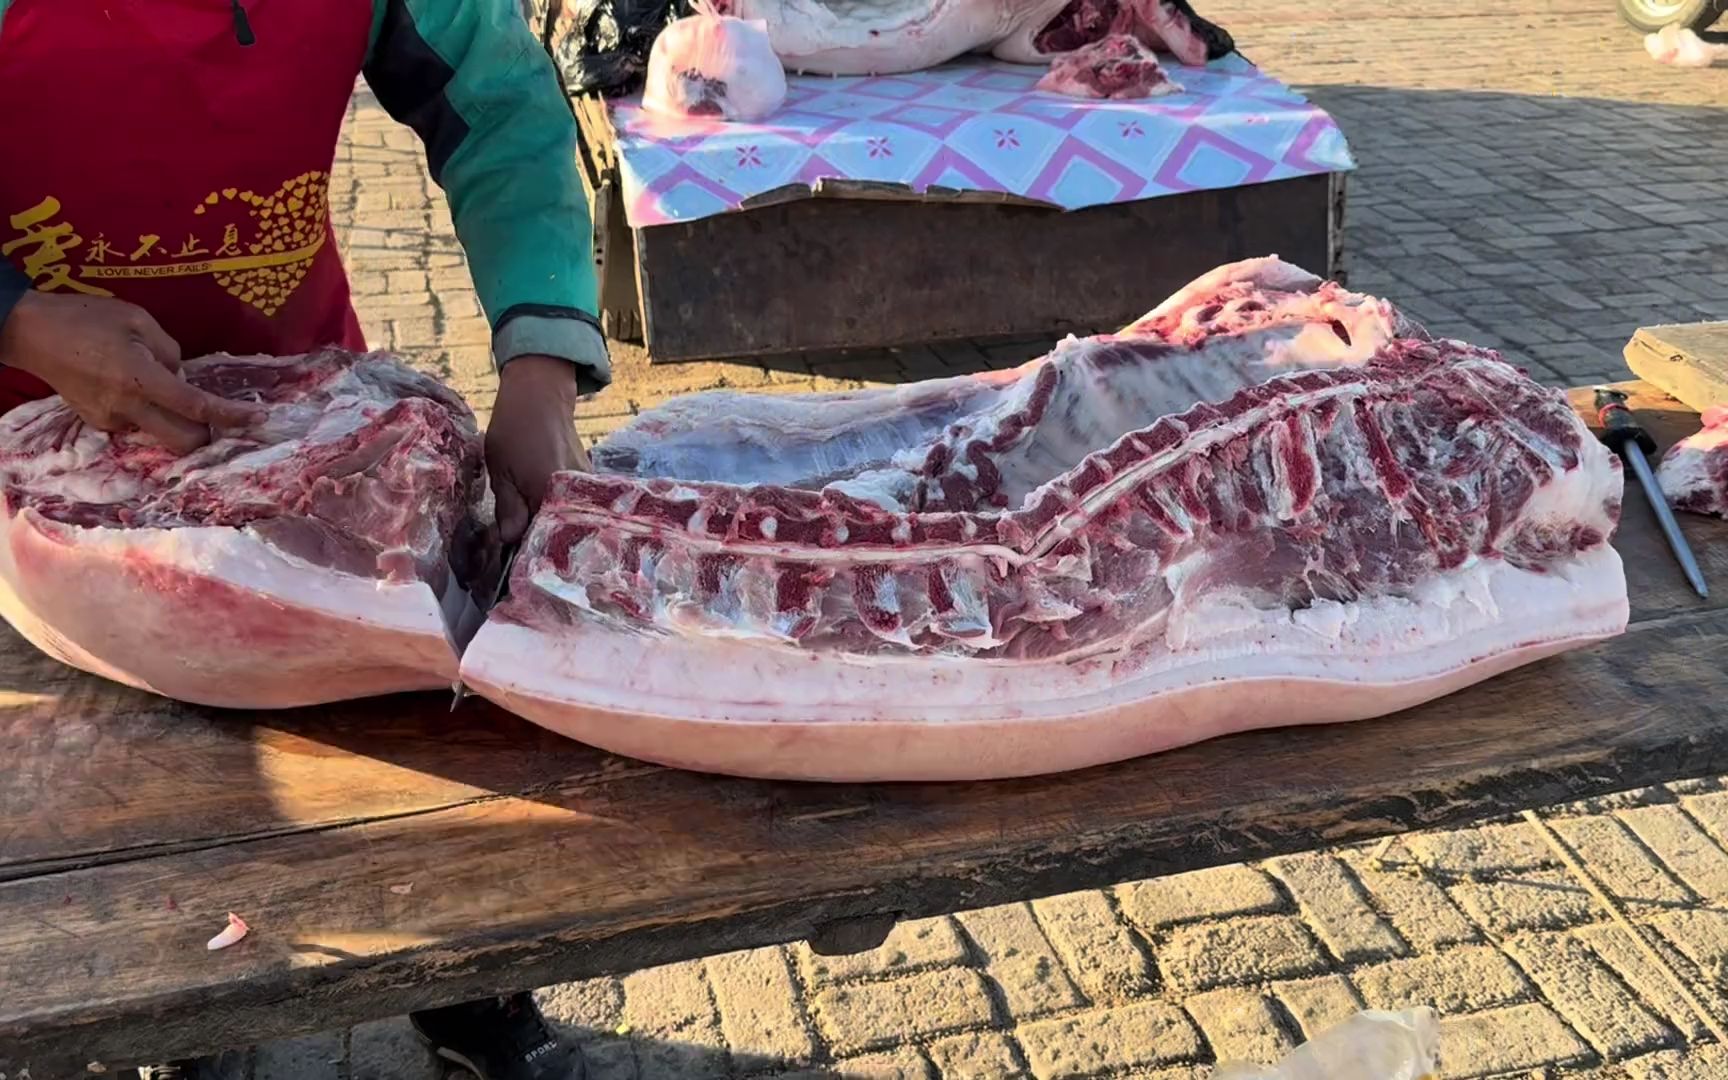 老孟卖猪肉,大早上遇上大碴儿了,一扇排骨和肉卖了600多,真硬